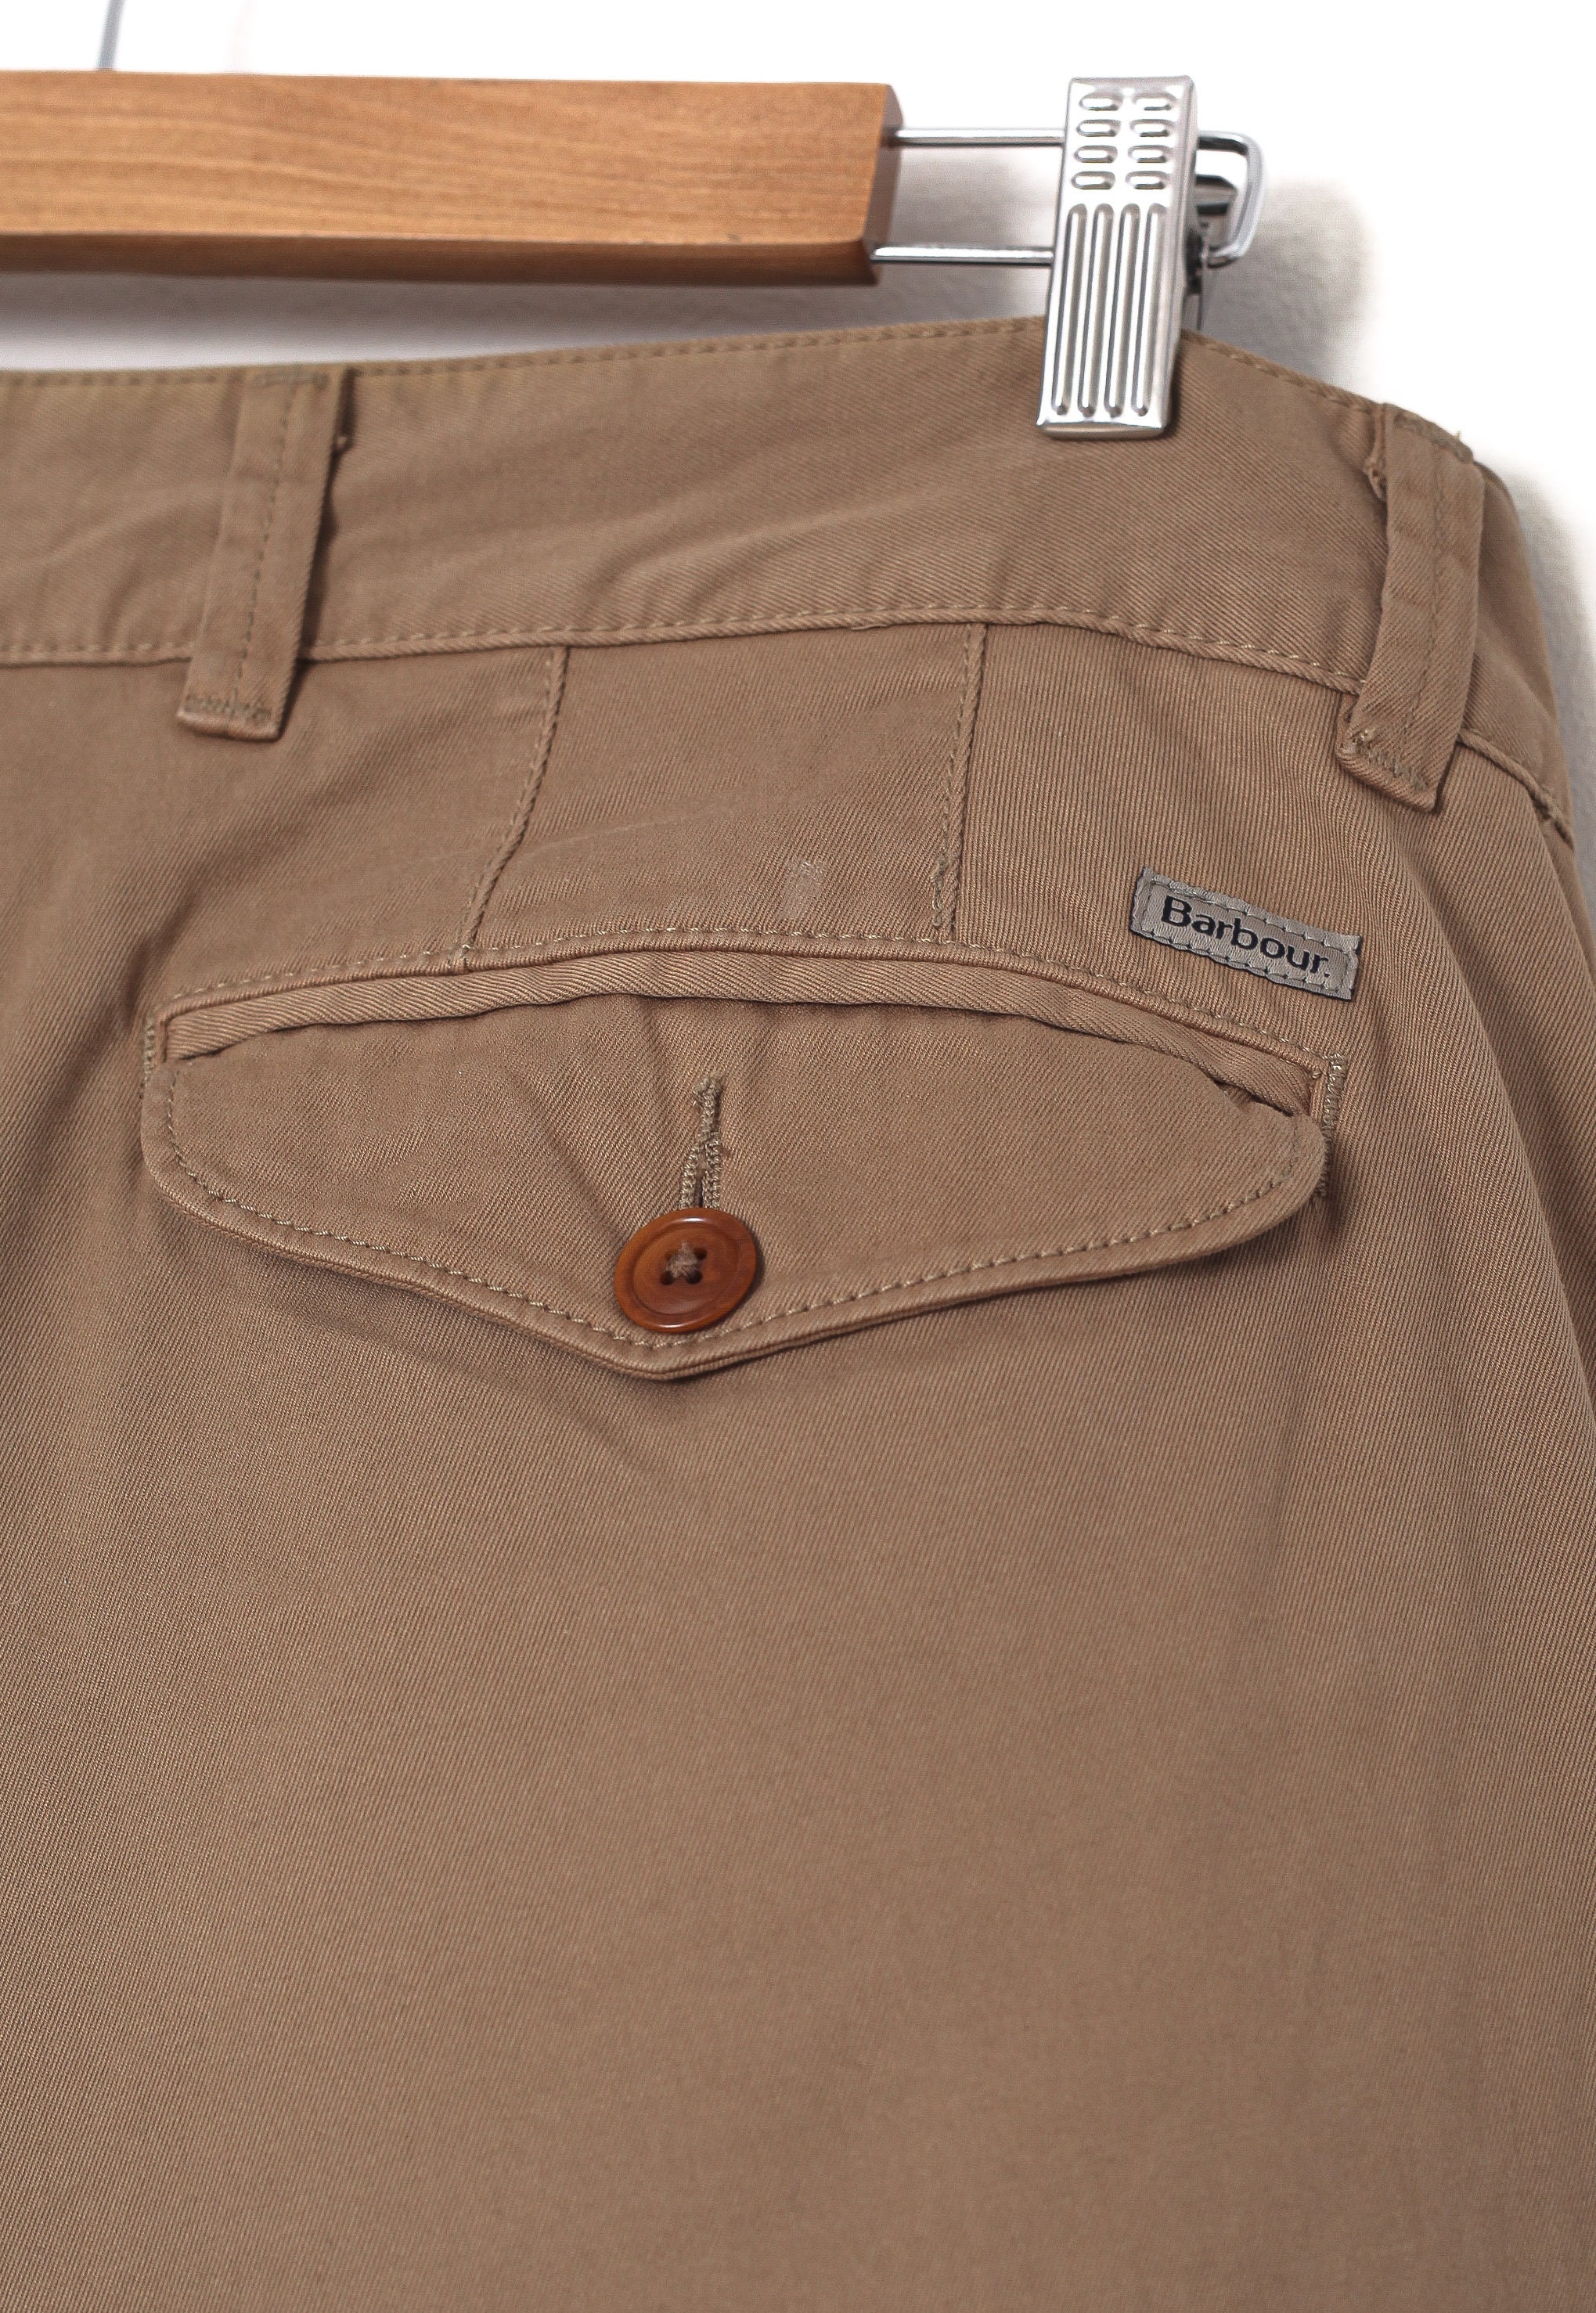 Vintage Mens BARBOUR Pants Trousers Beige Size W34 L32 | Etsy